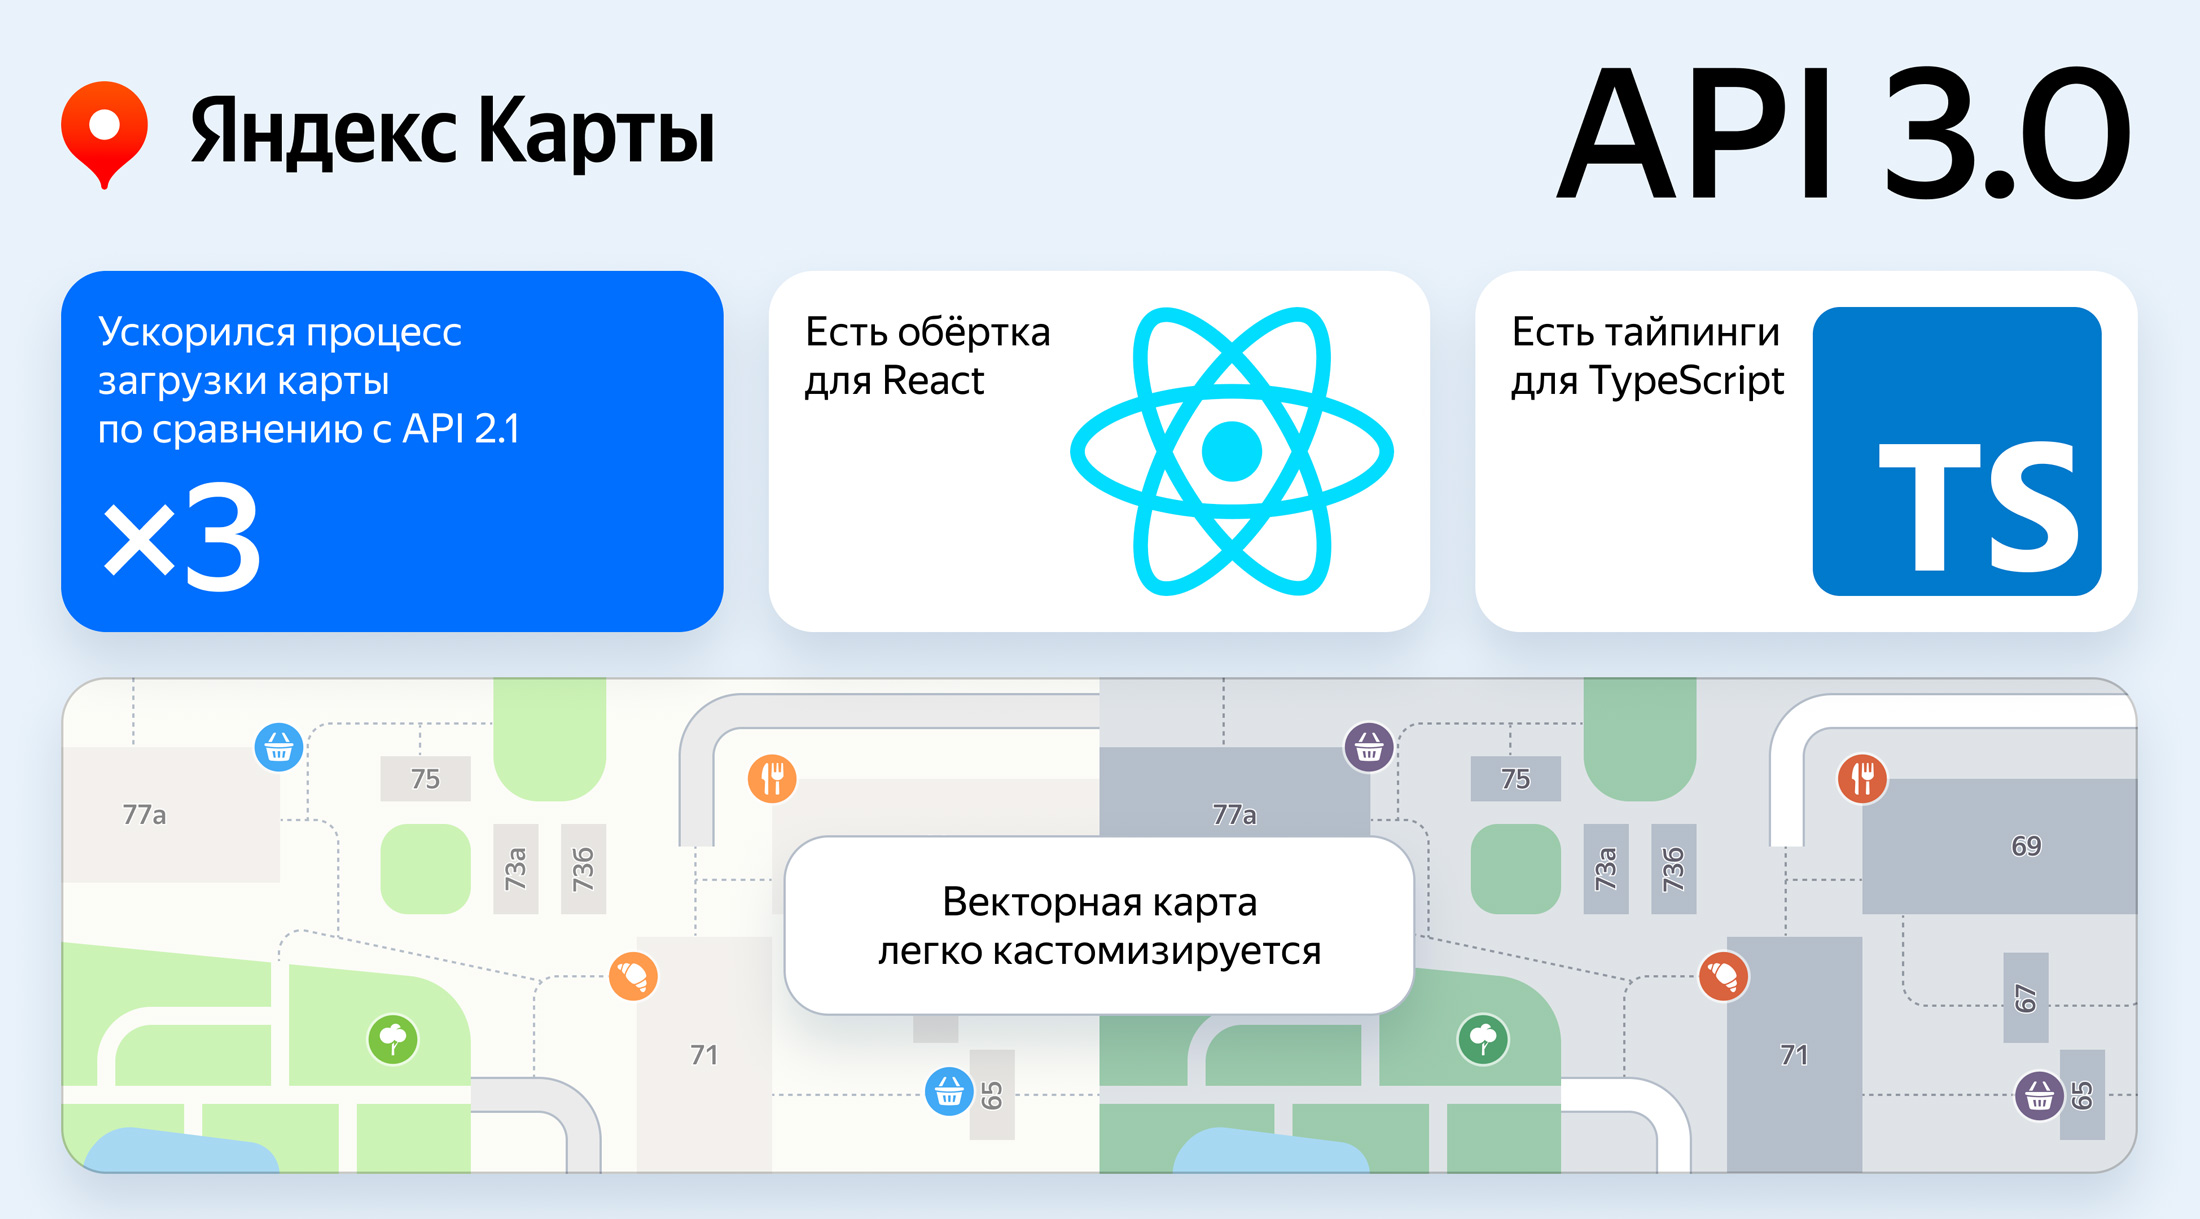 Яндекс Карты представили новый JS API с расширенными возможностями дизайна карт